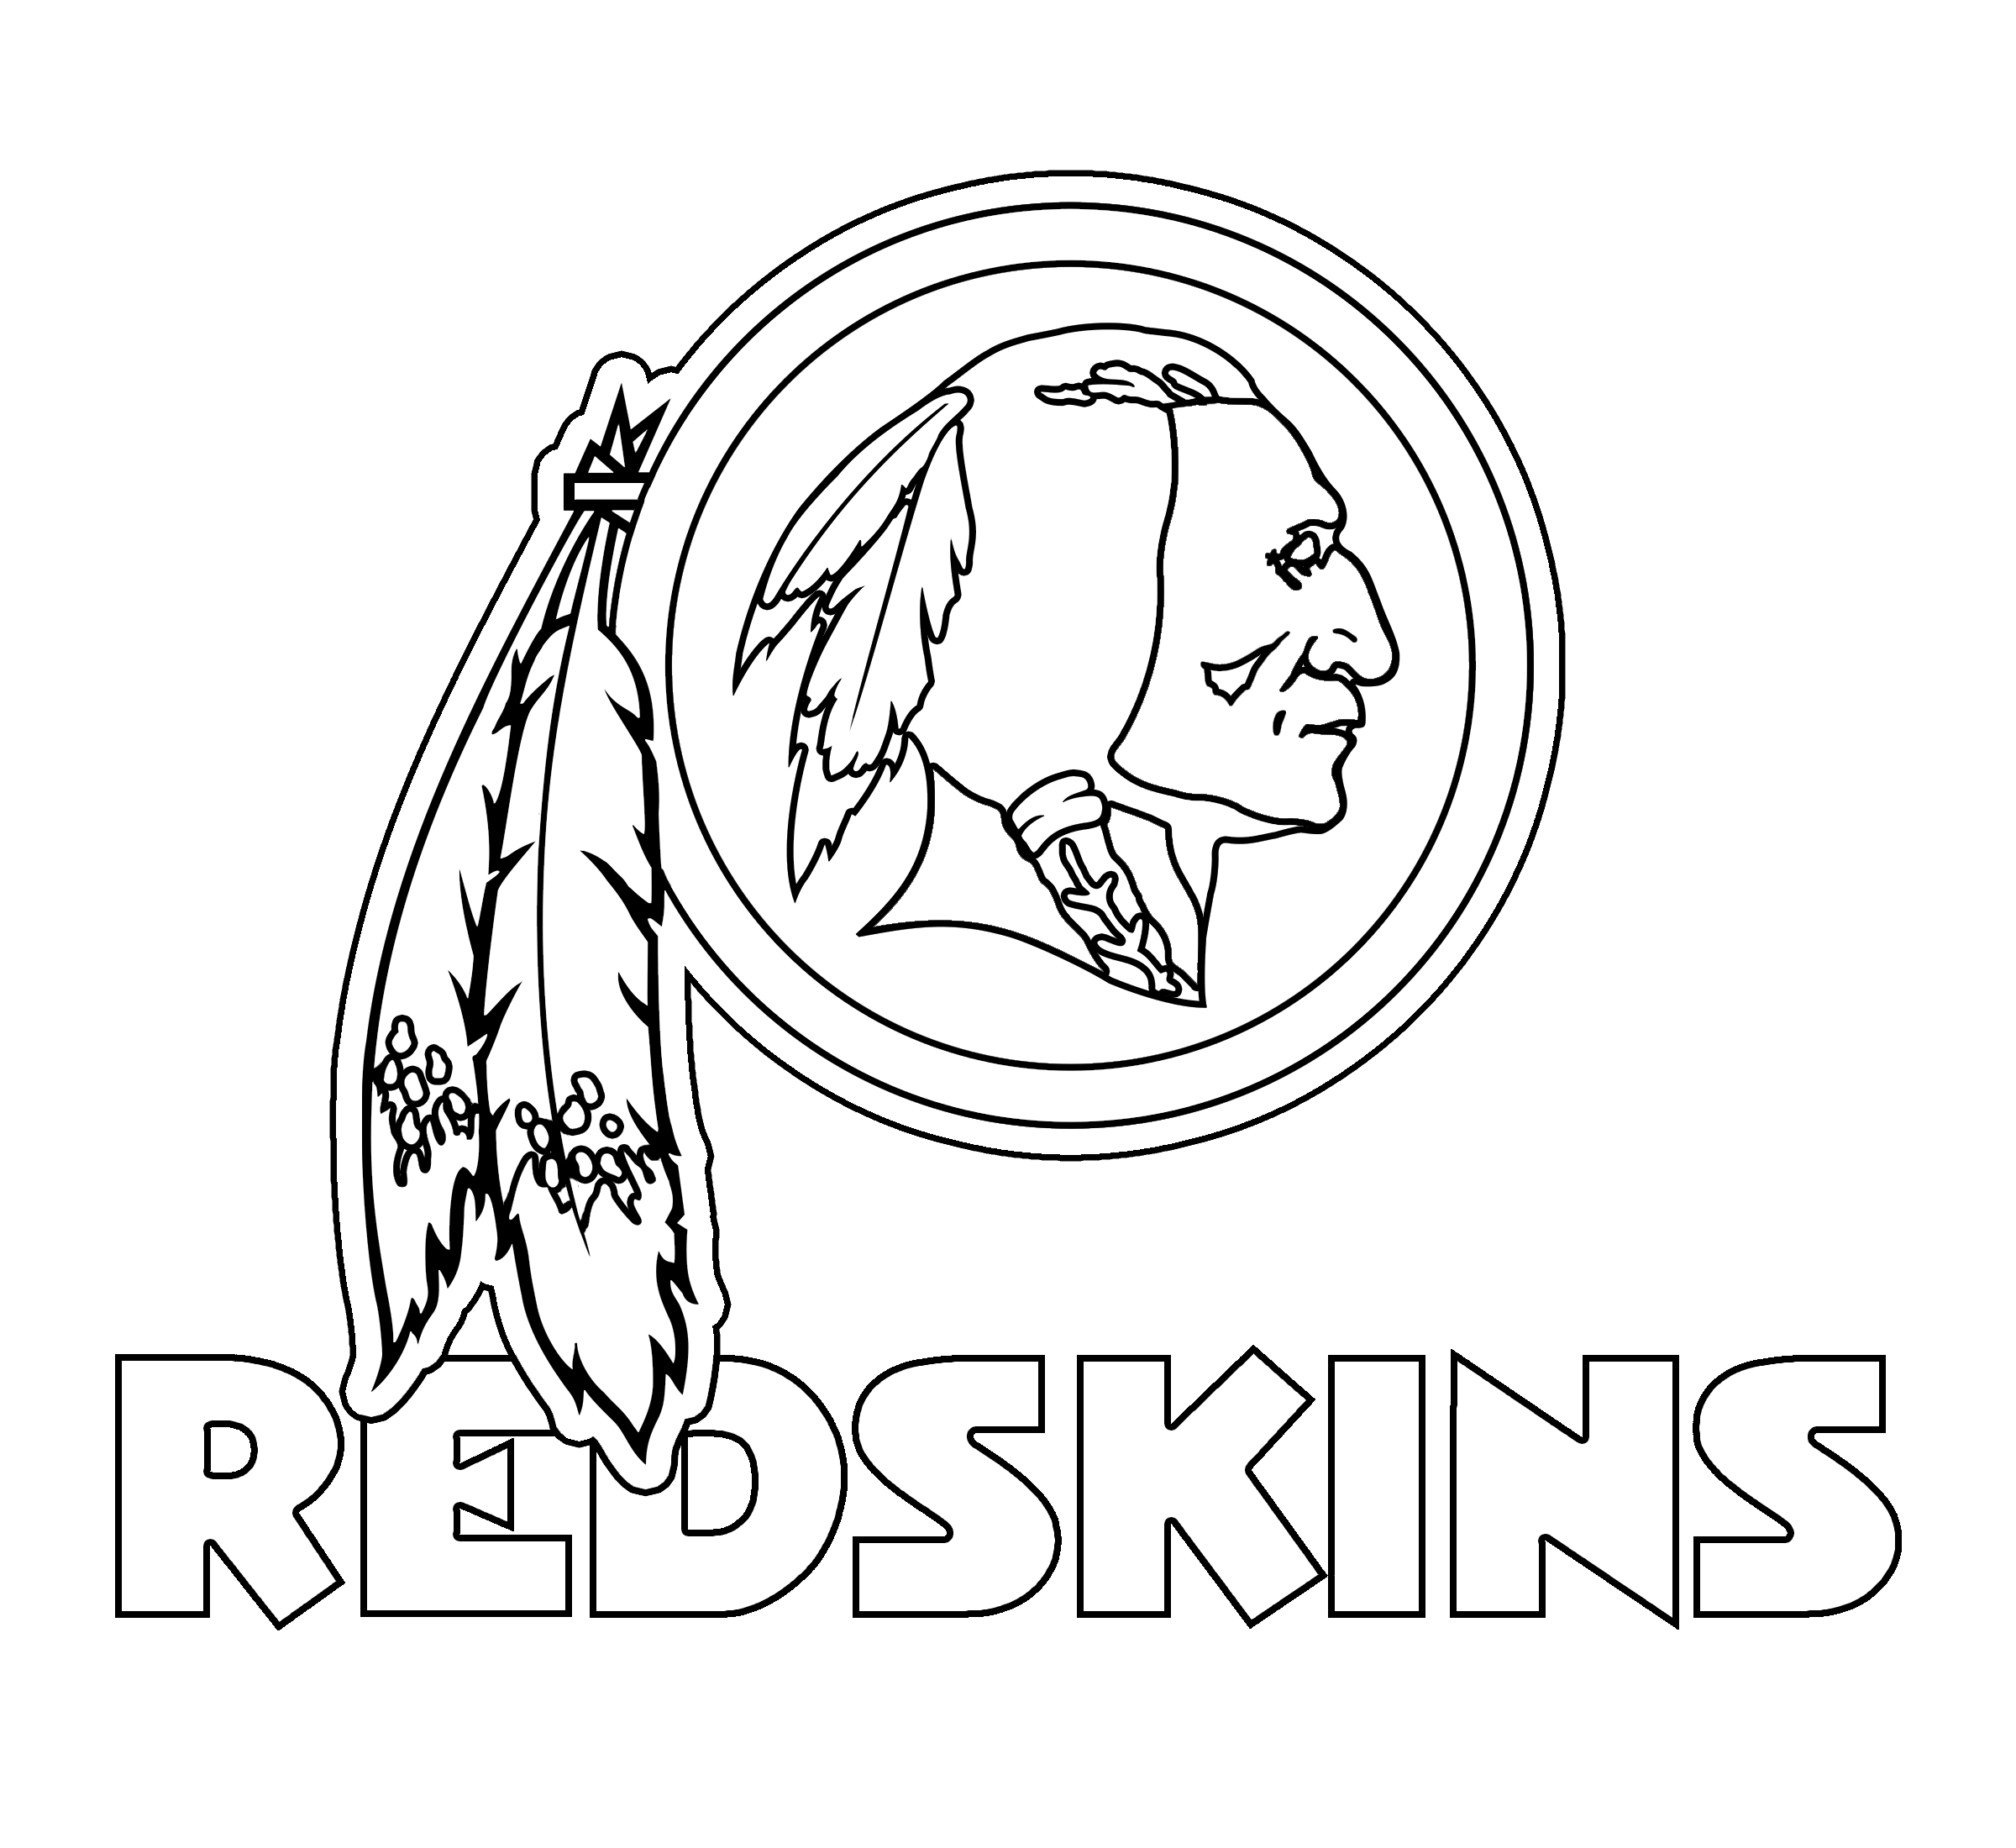 NFL Redskins Logo - Washington Redskins Logo PNG Transparent & SVG Vector - Freebie Supply